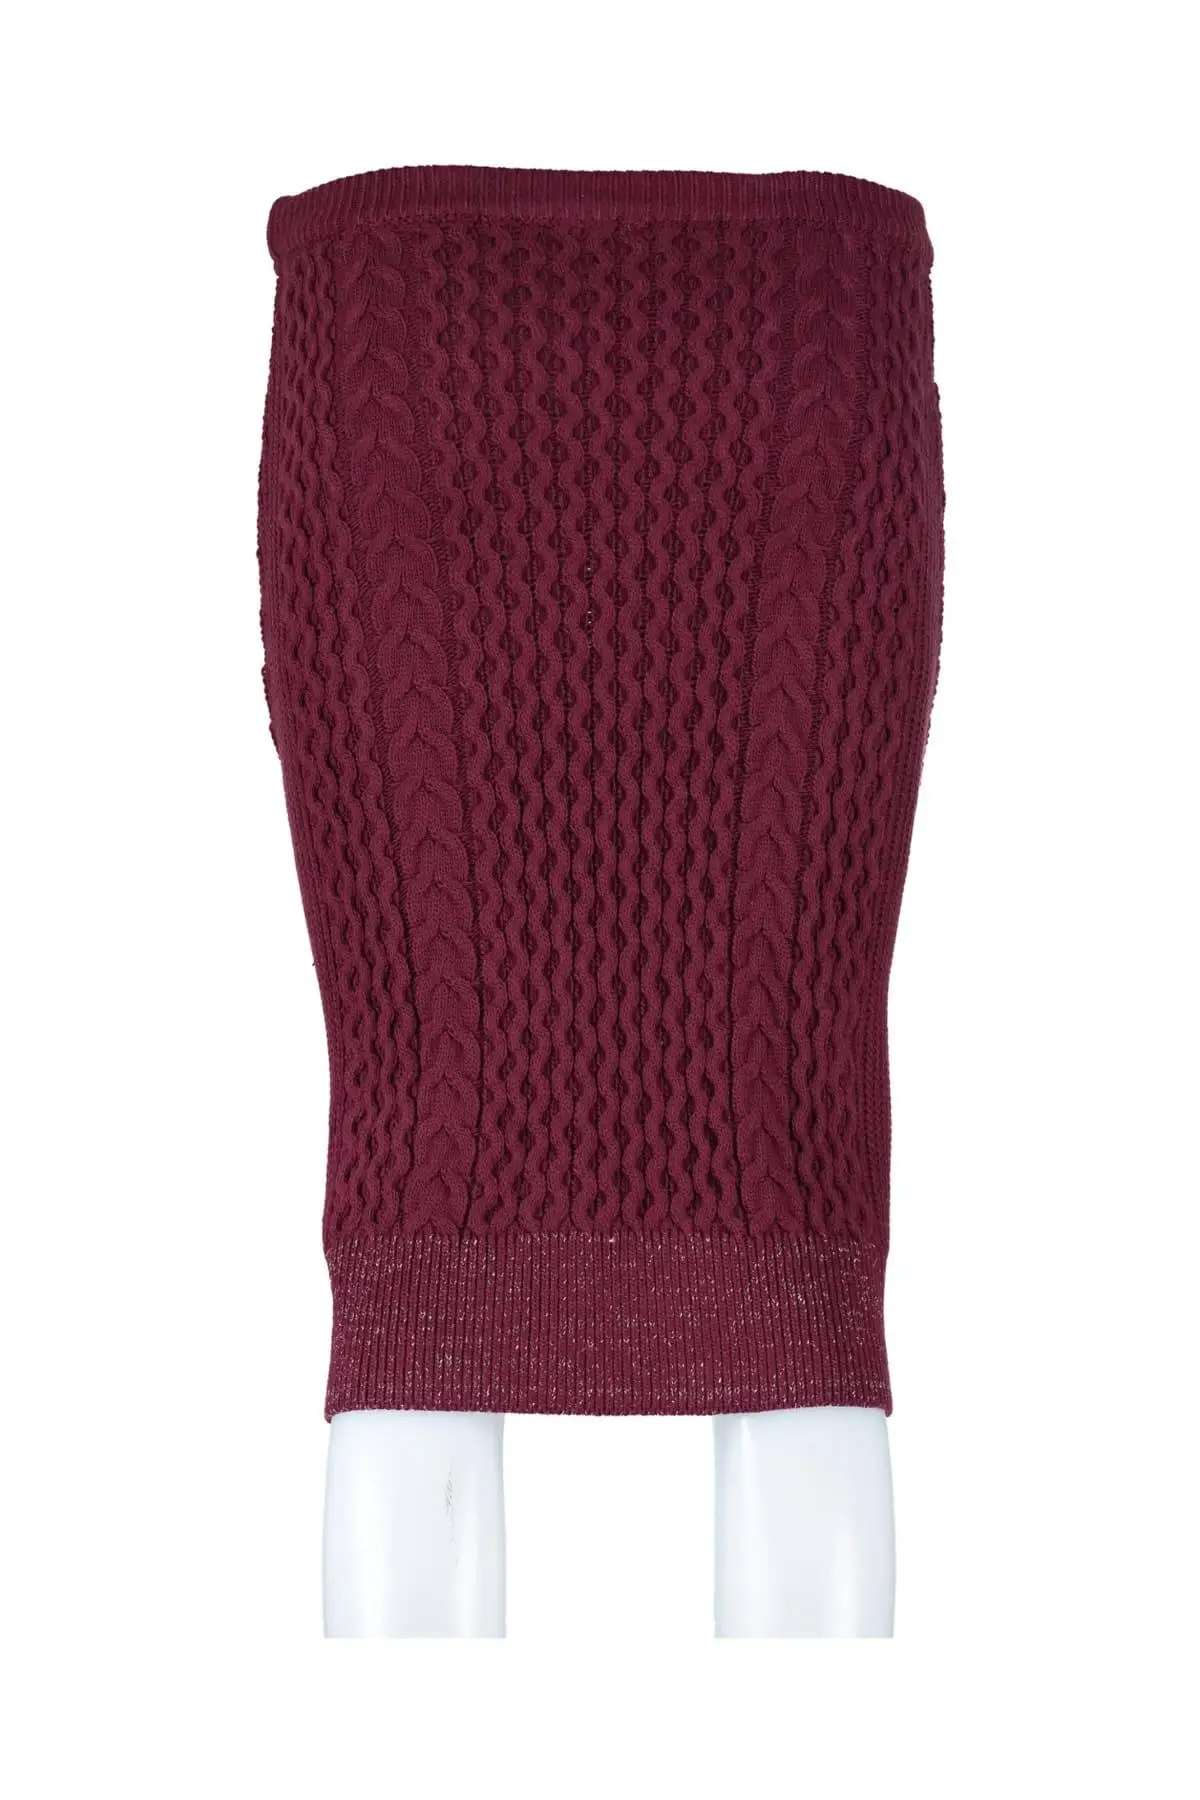 Trendyol женская бордовая плетеная юбка-свитер с Sim detayl TWOAW20FV0012